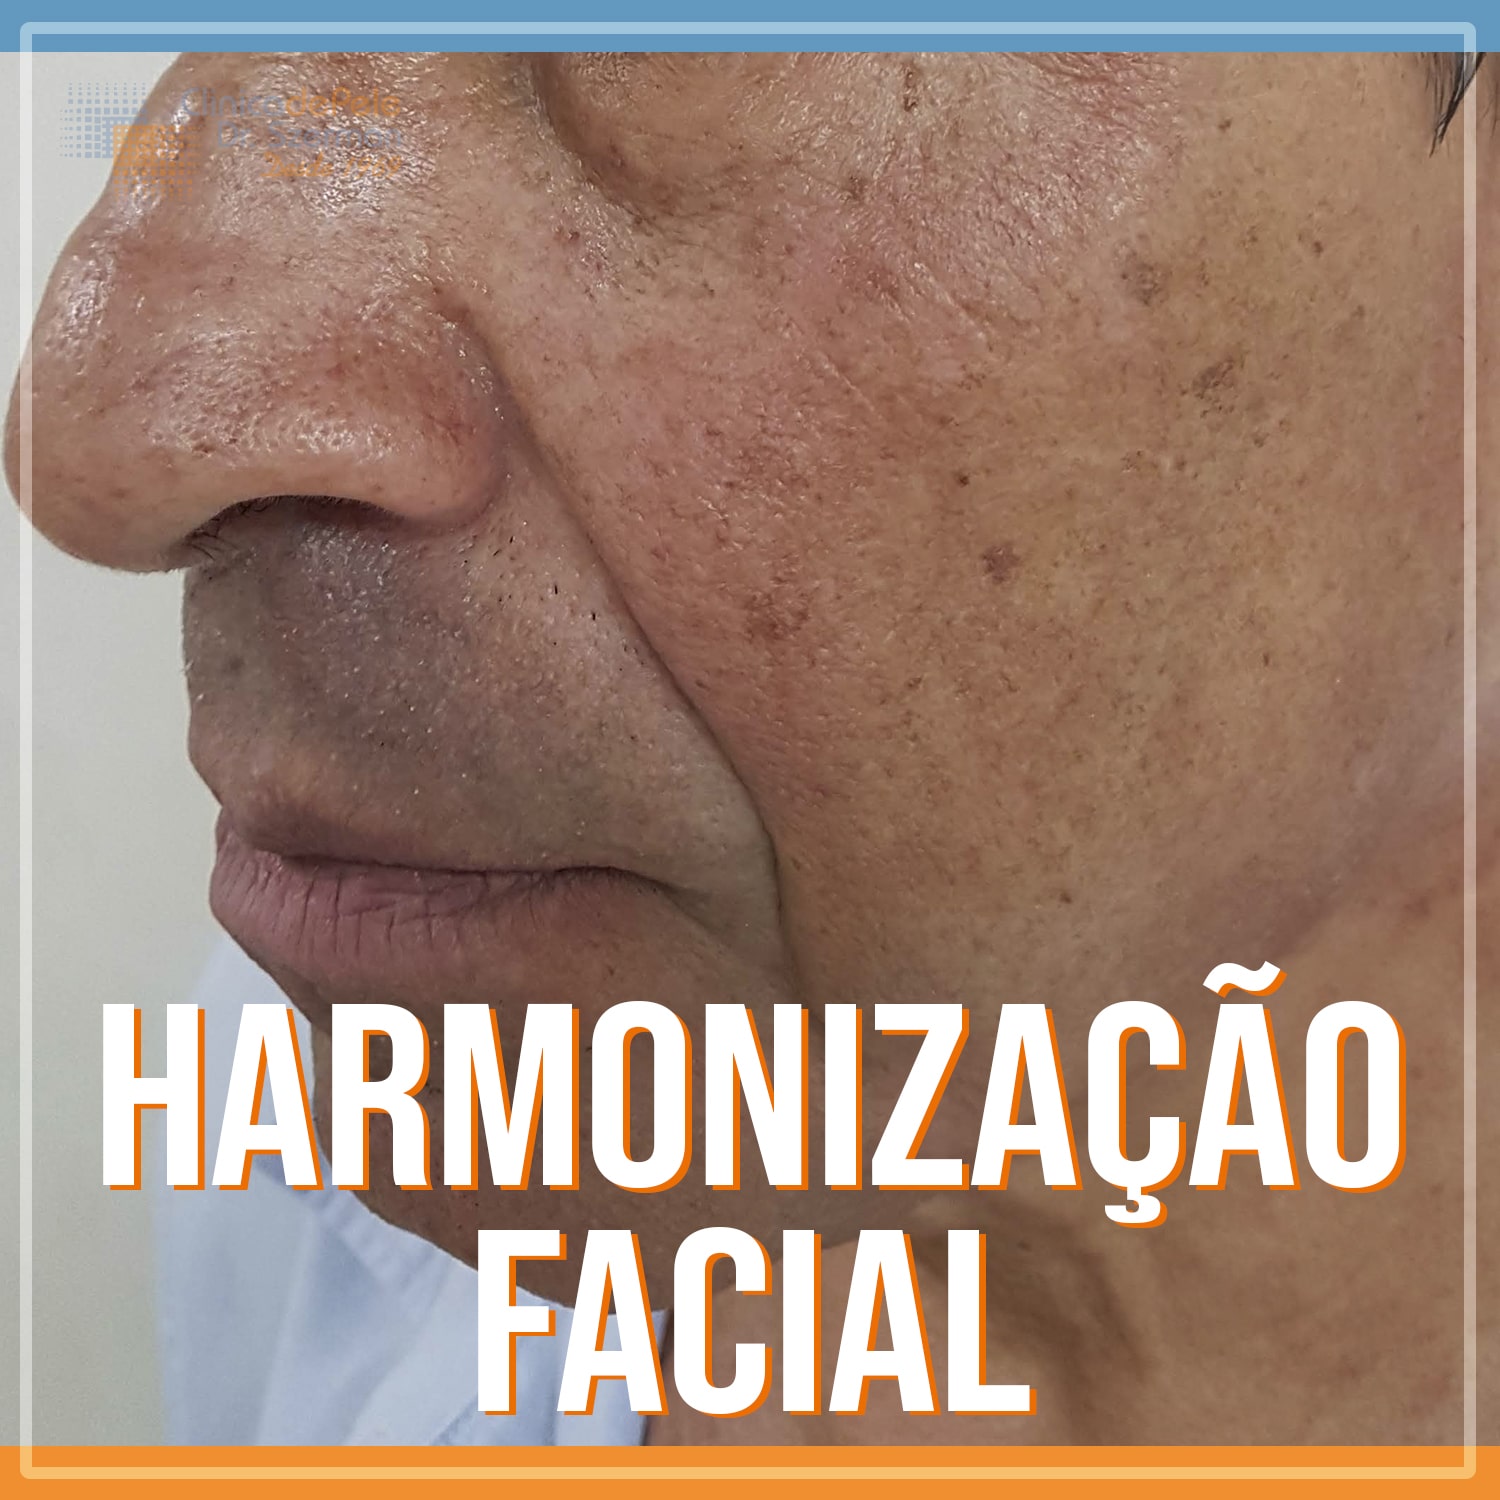 procedimento de harmonização facial